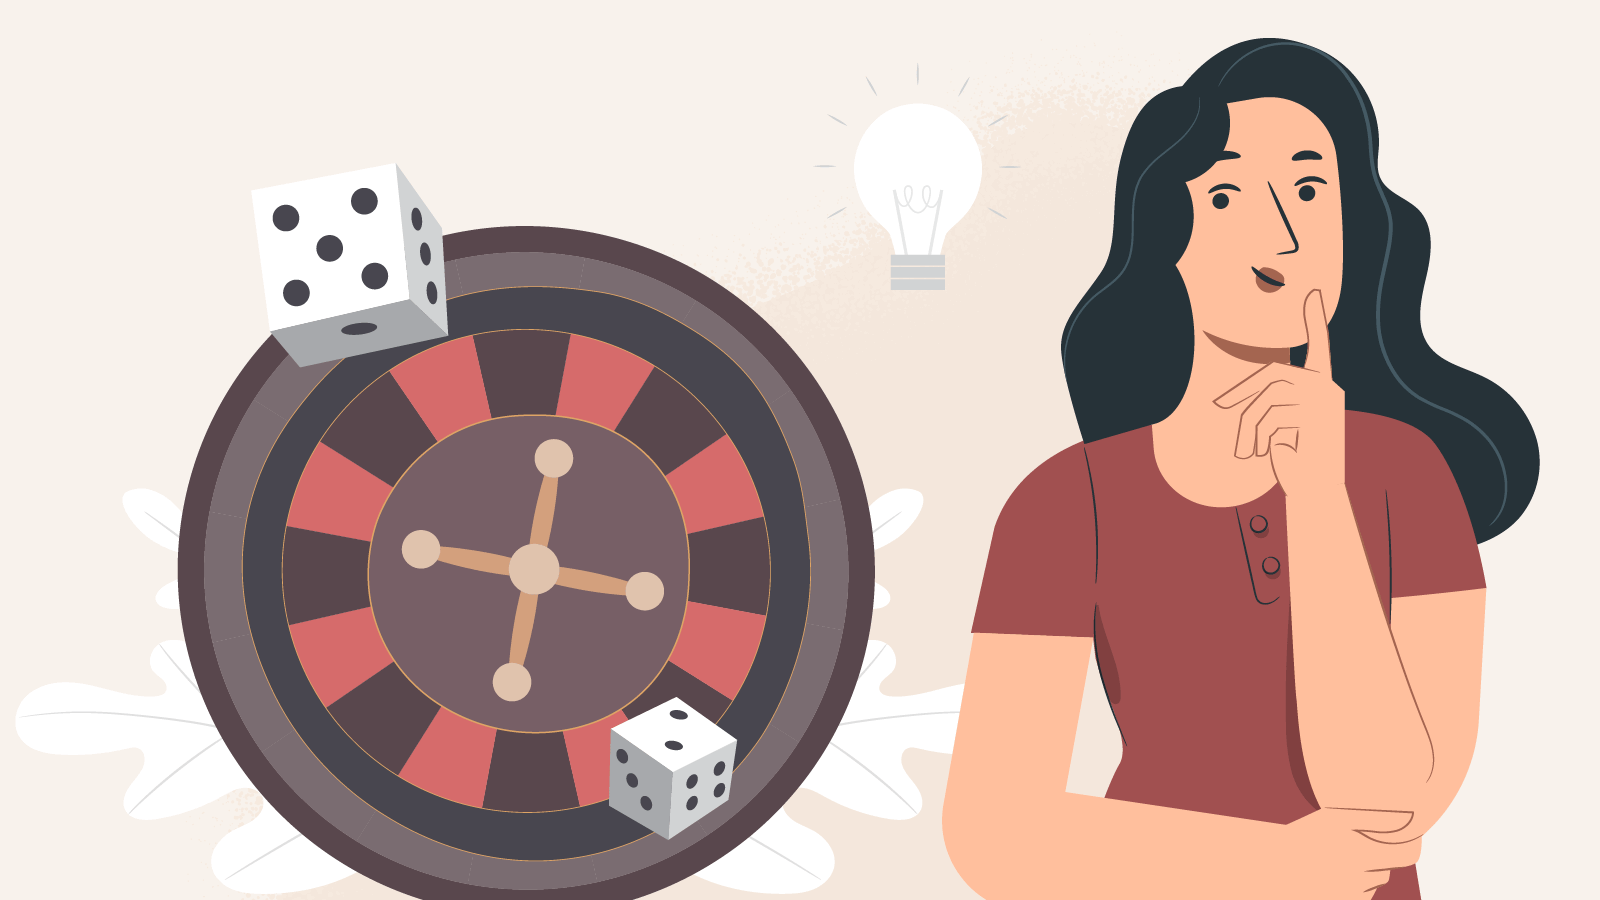 Ruleta casino – Istoria celui mai popular joc de noroc